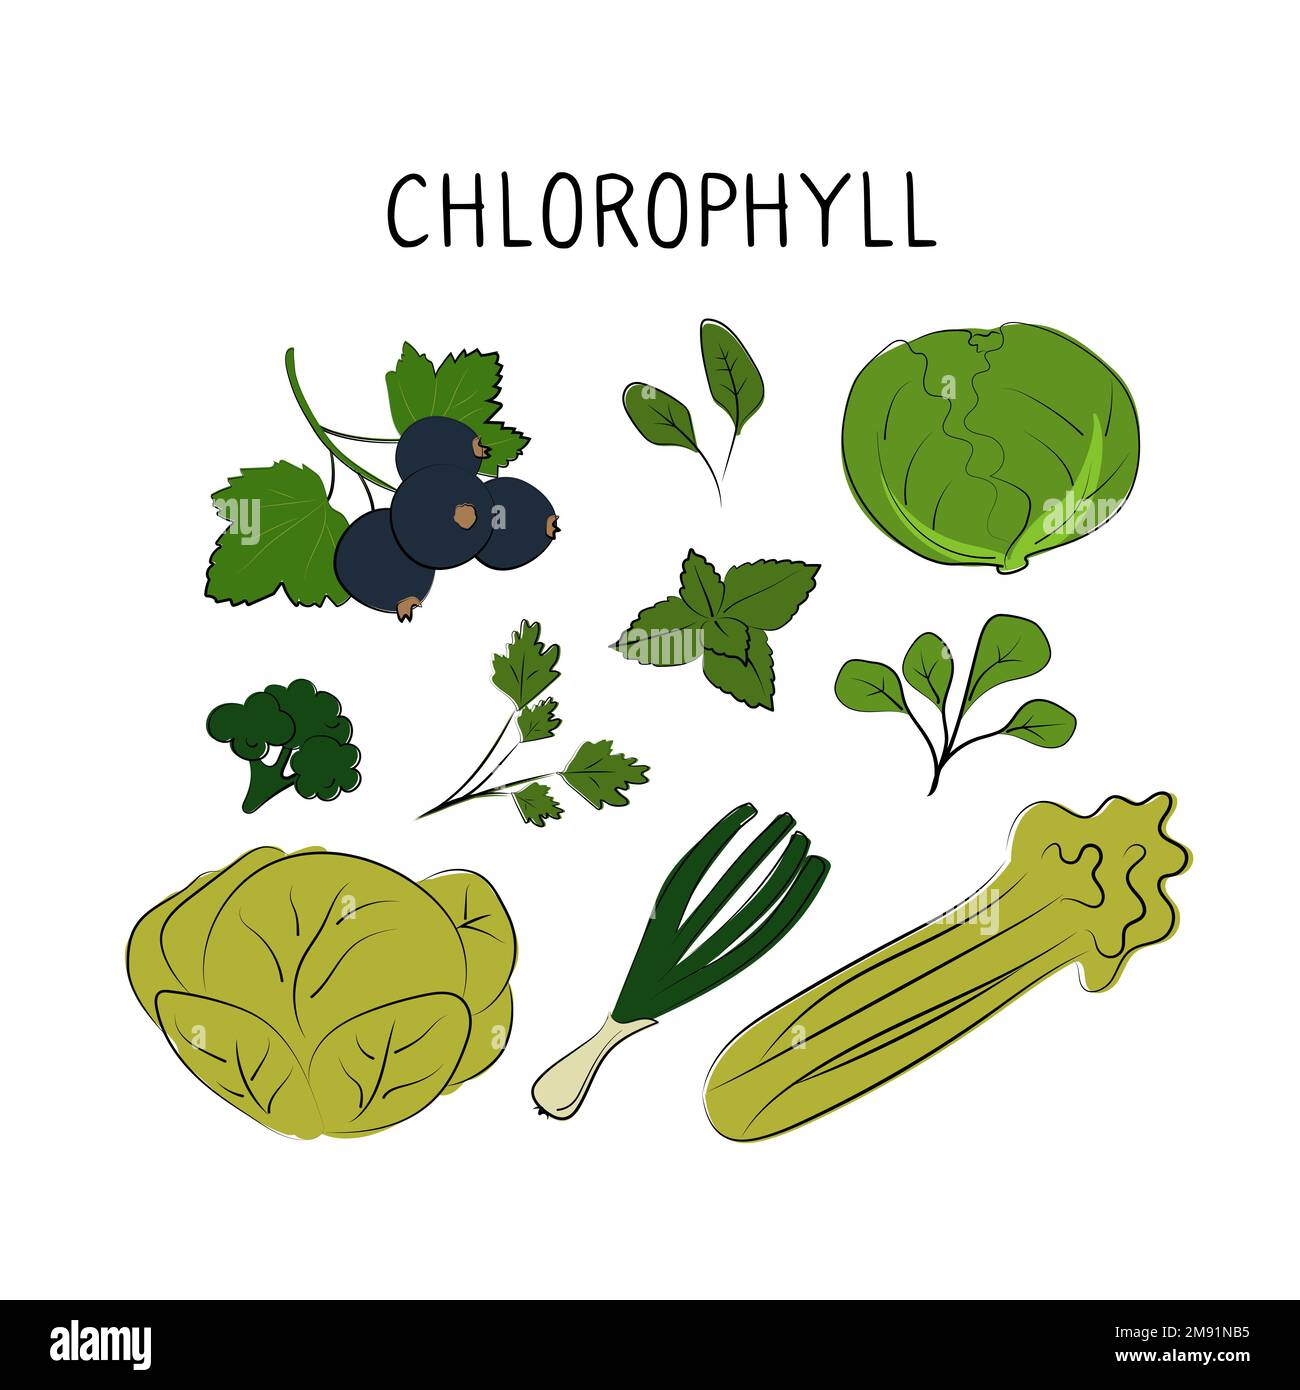 Chlorophyllhaltige Lebensmittel. Gruppen von gesunden Produkten, die Vitamine und Mineralien enthalten. Obst, Gemüse, Fleisch, Fisch und Milchprodukte. Stock Vektor